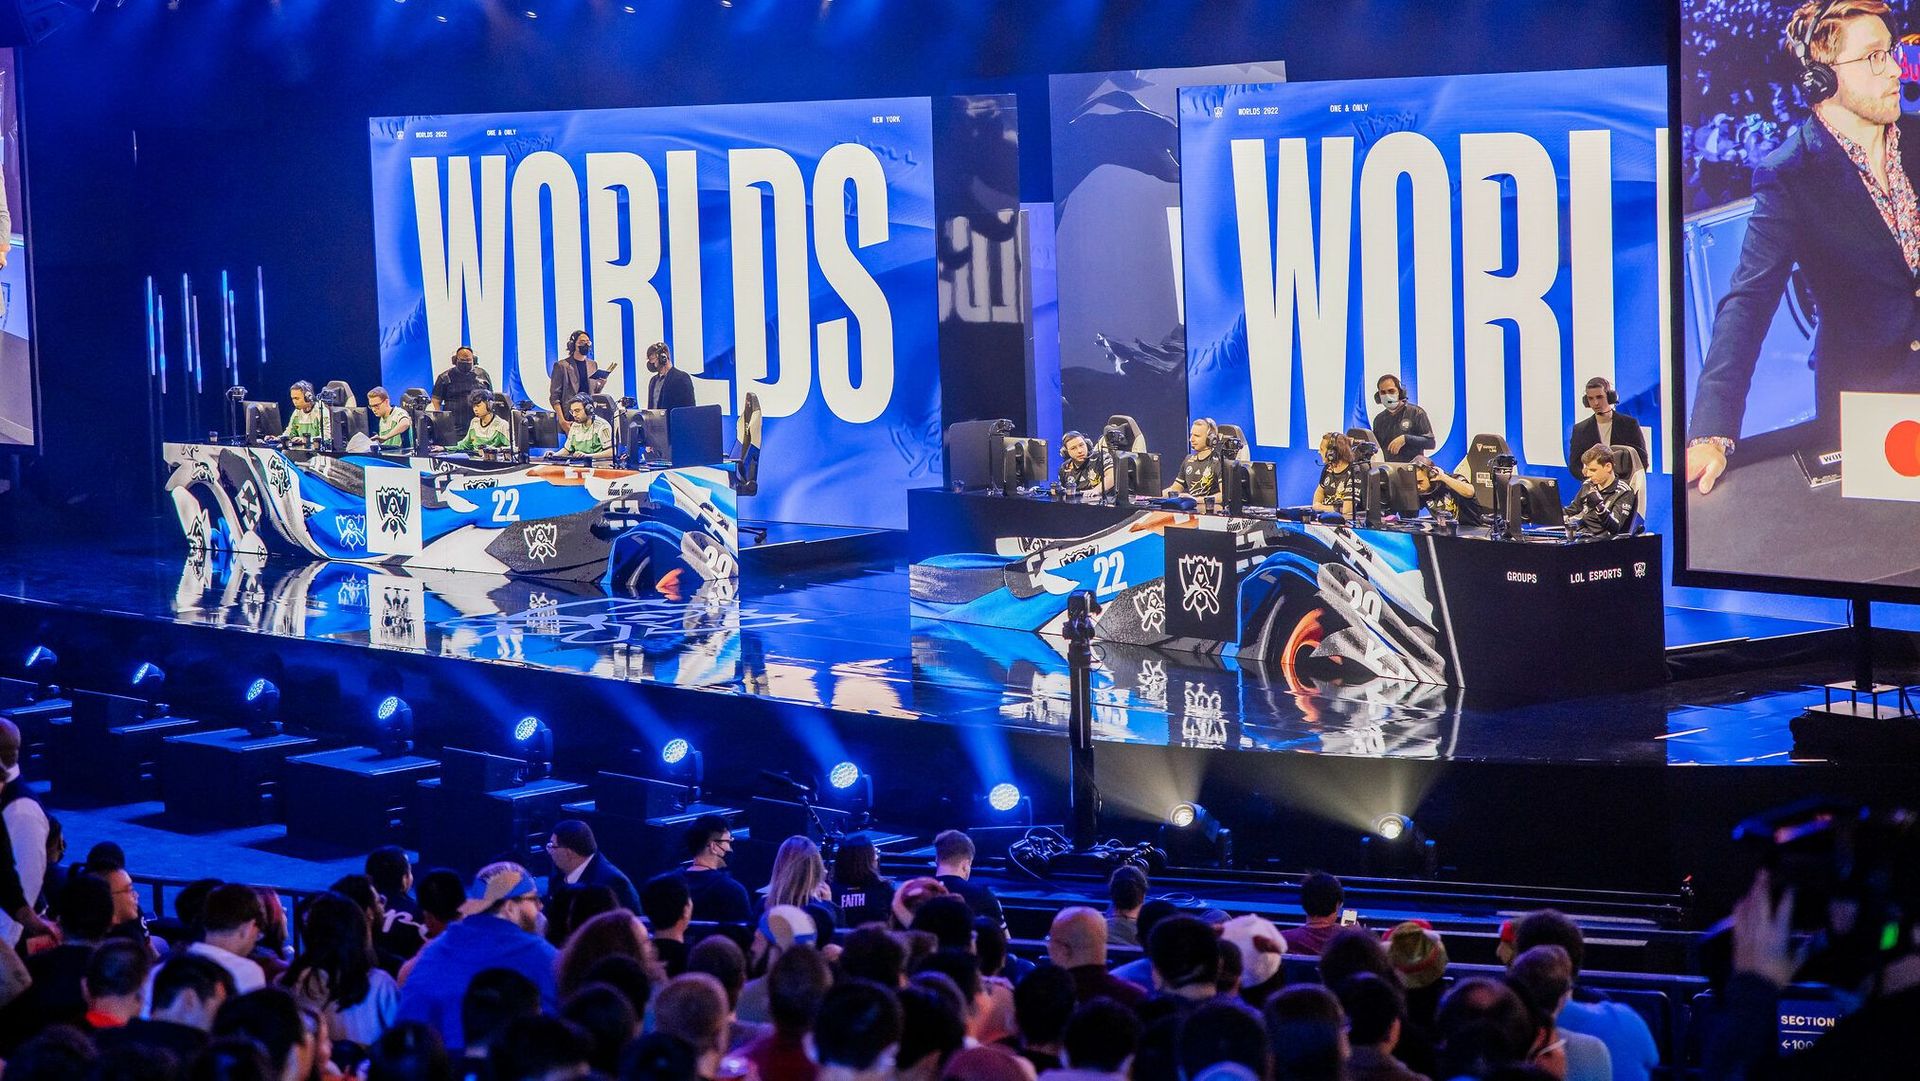 Ce week-end, la Grande Finale des Worlds de League of Legends couronnera la meilleure équipe du monde sur LoL.